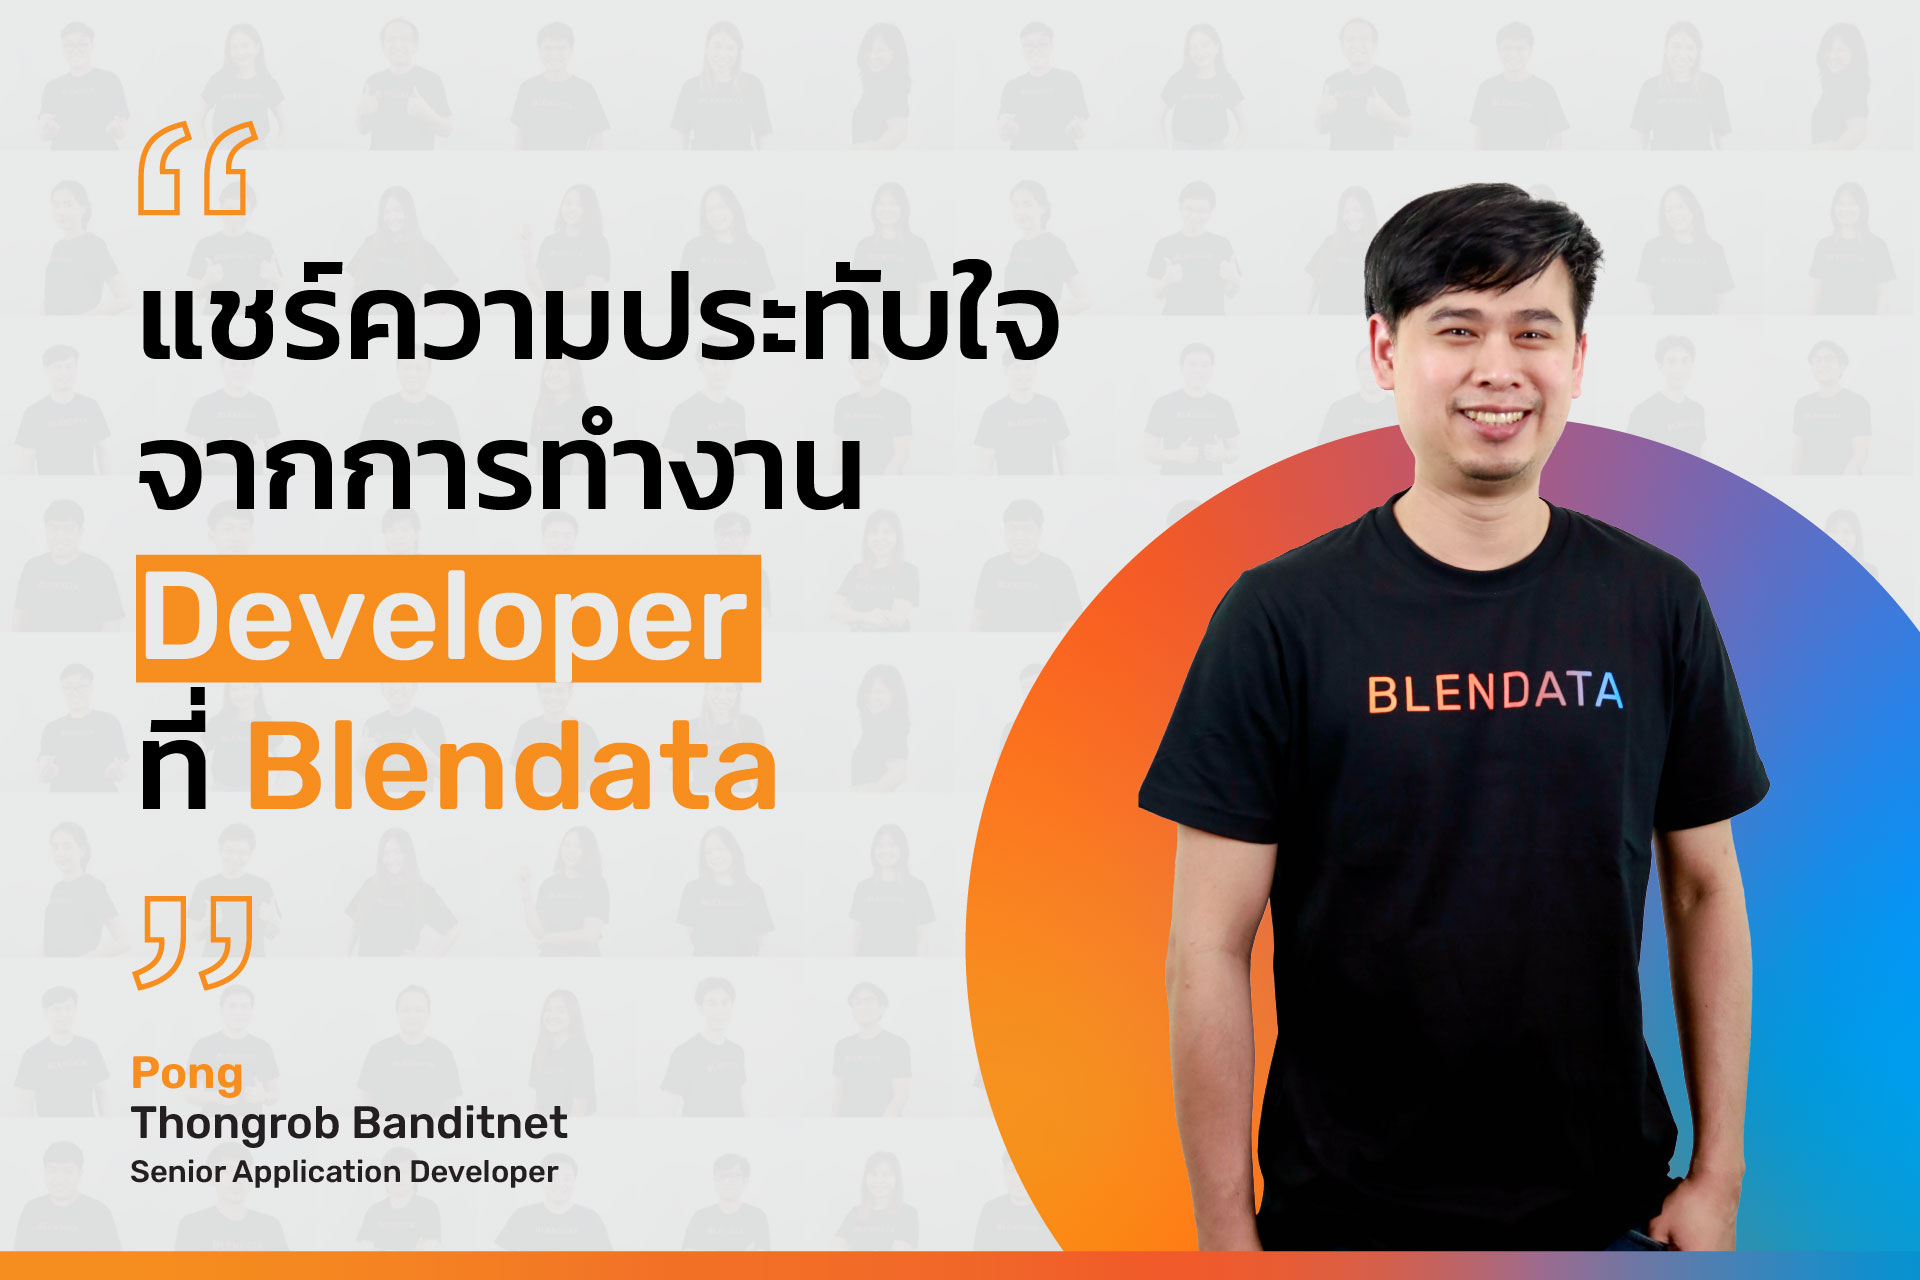 แชร์ความประทับใจจากการทำงาน Developer ที่ Blendata.